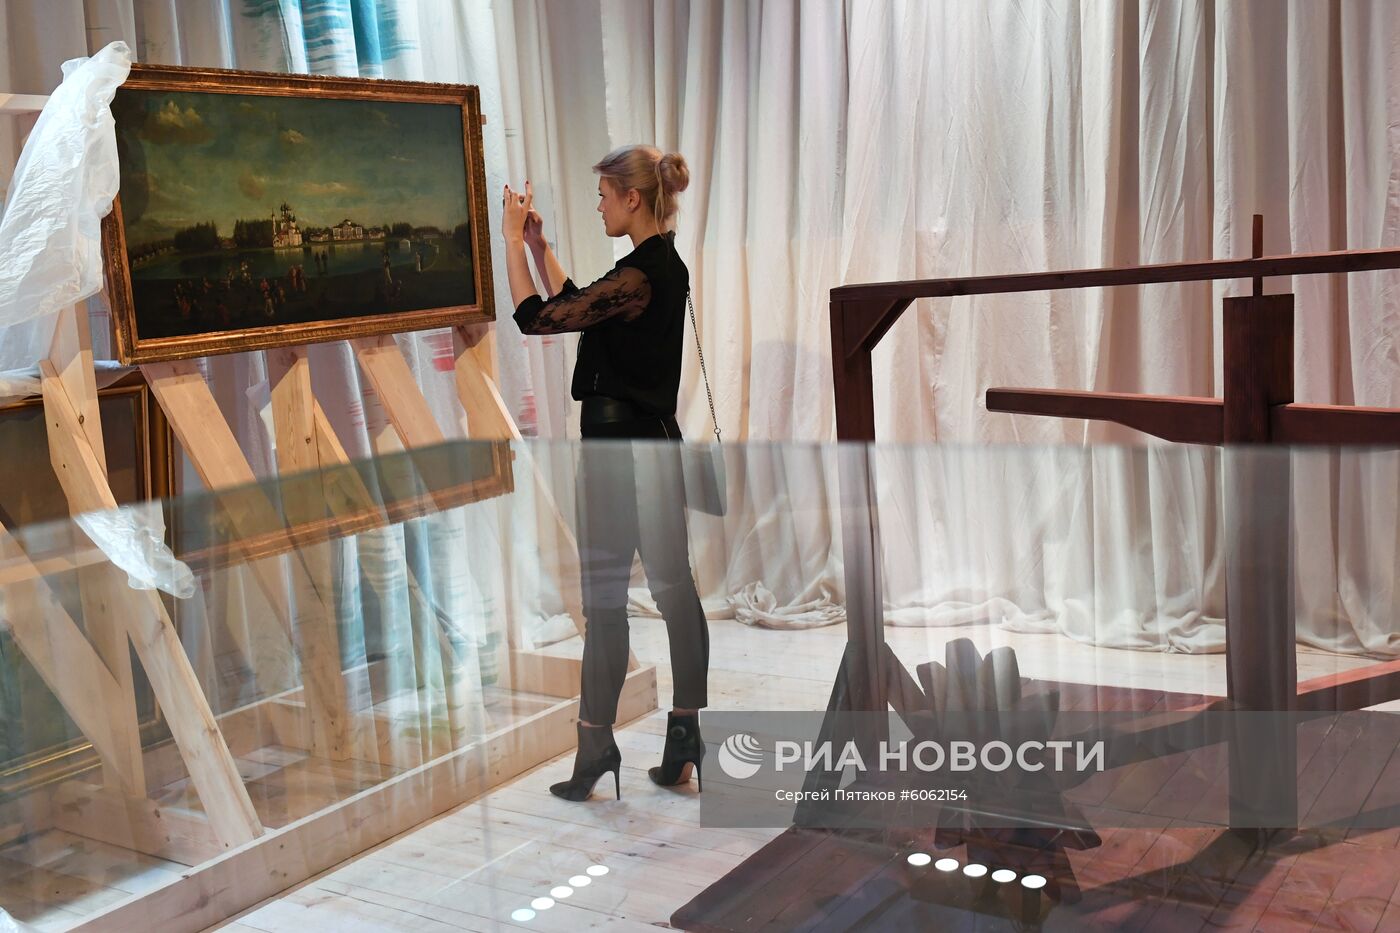 Выставка "Театр.RUS" в Москве